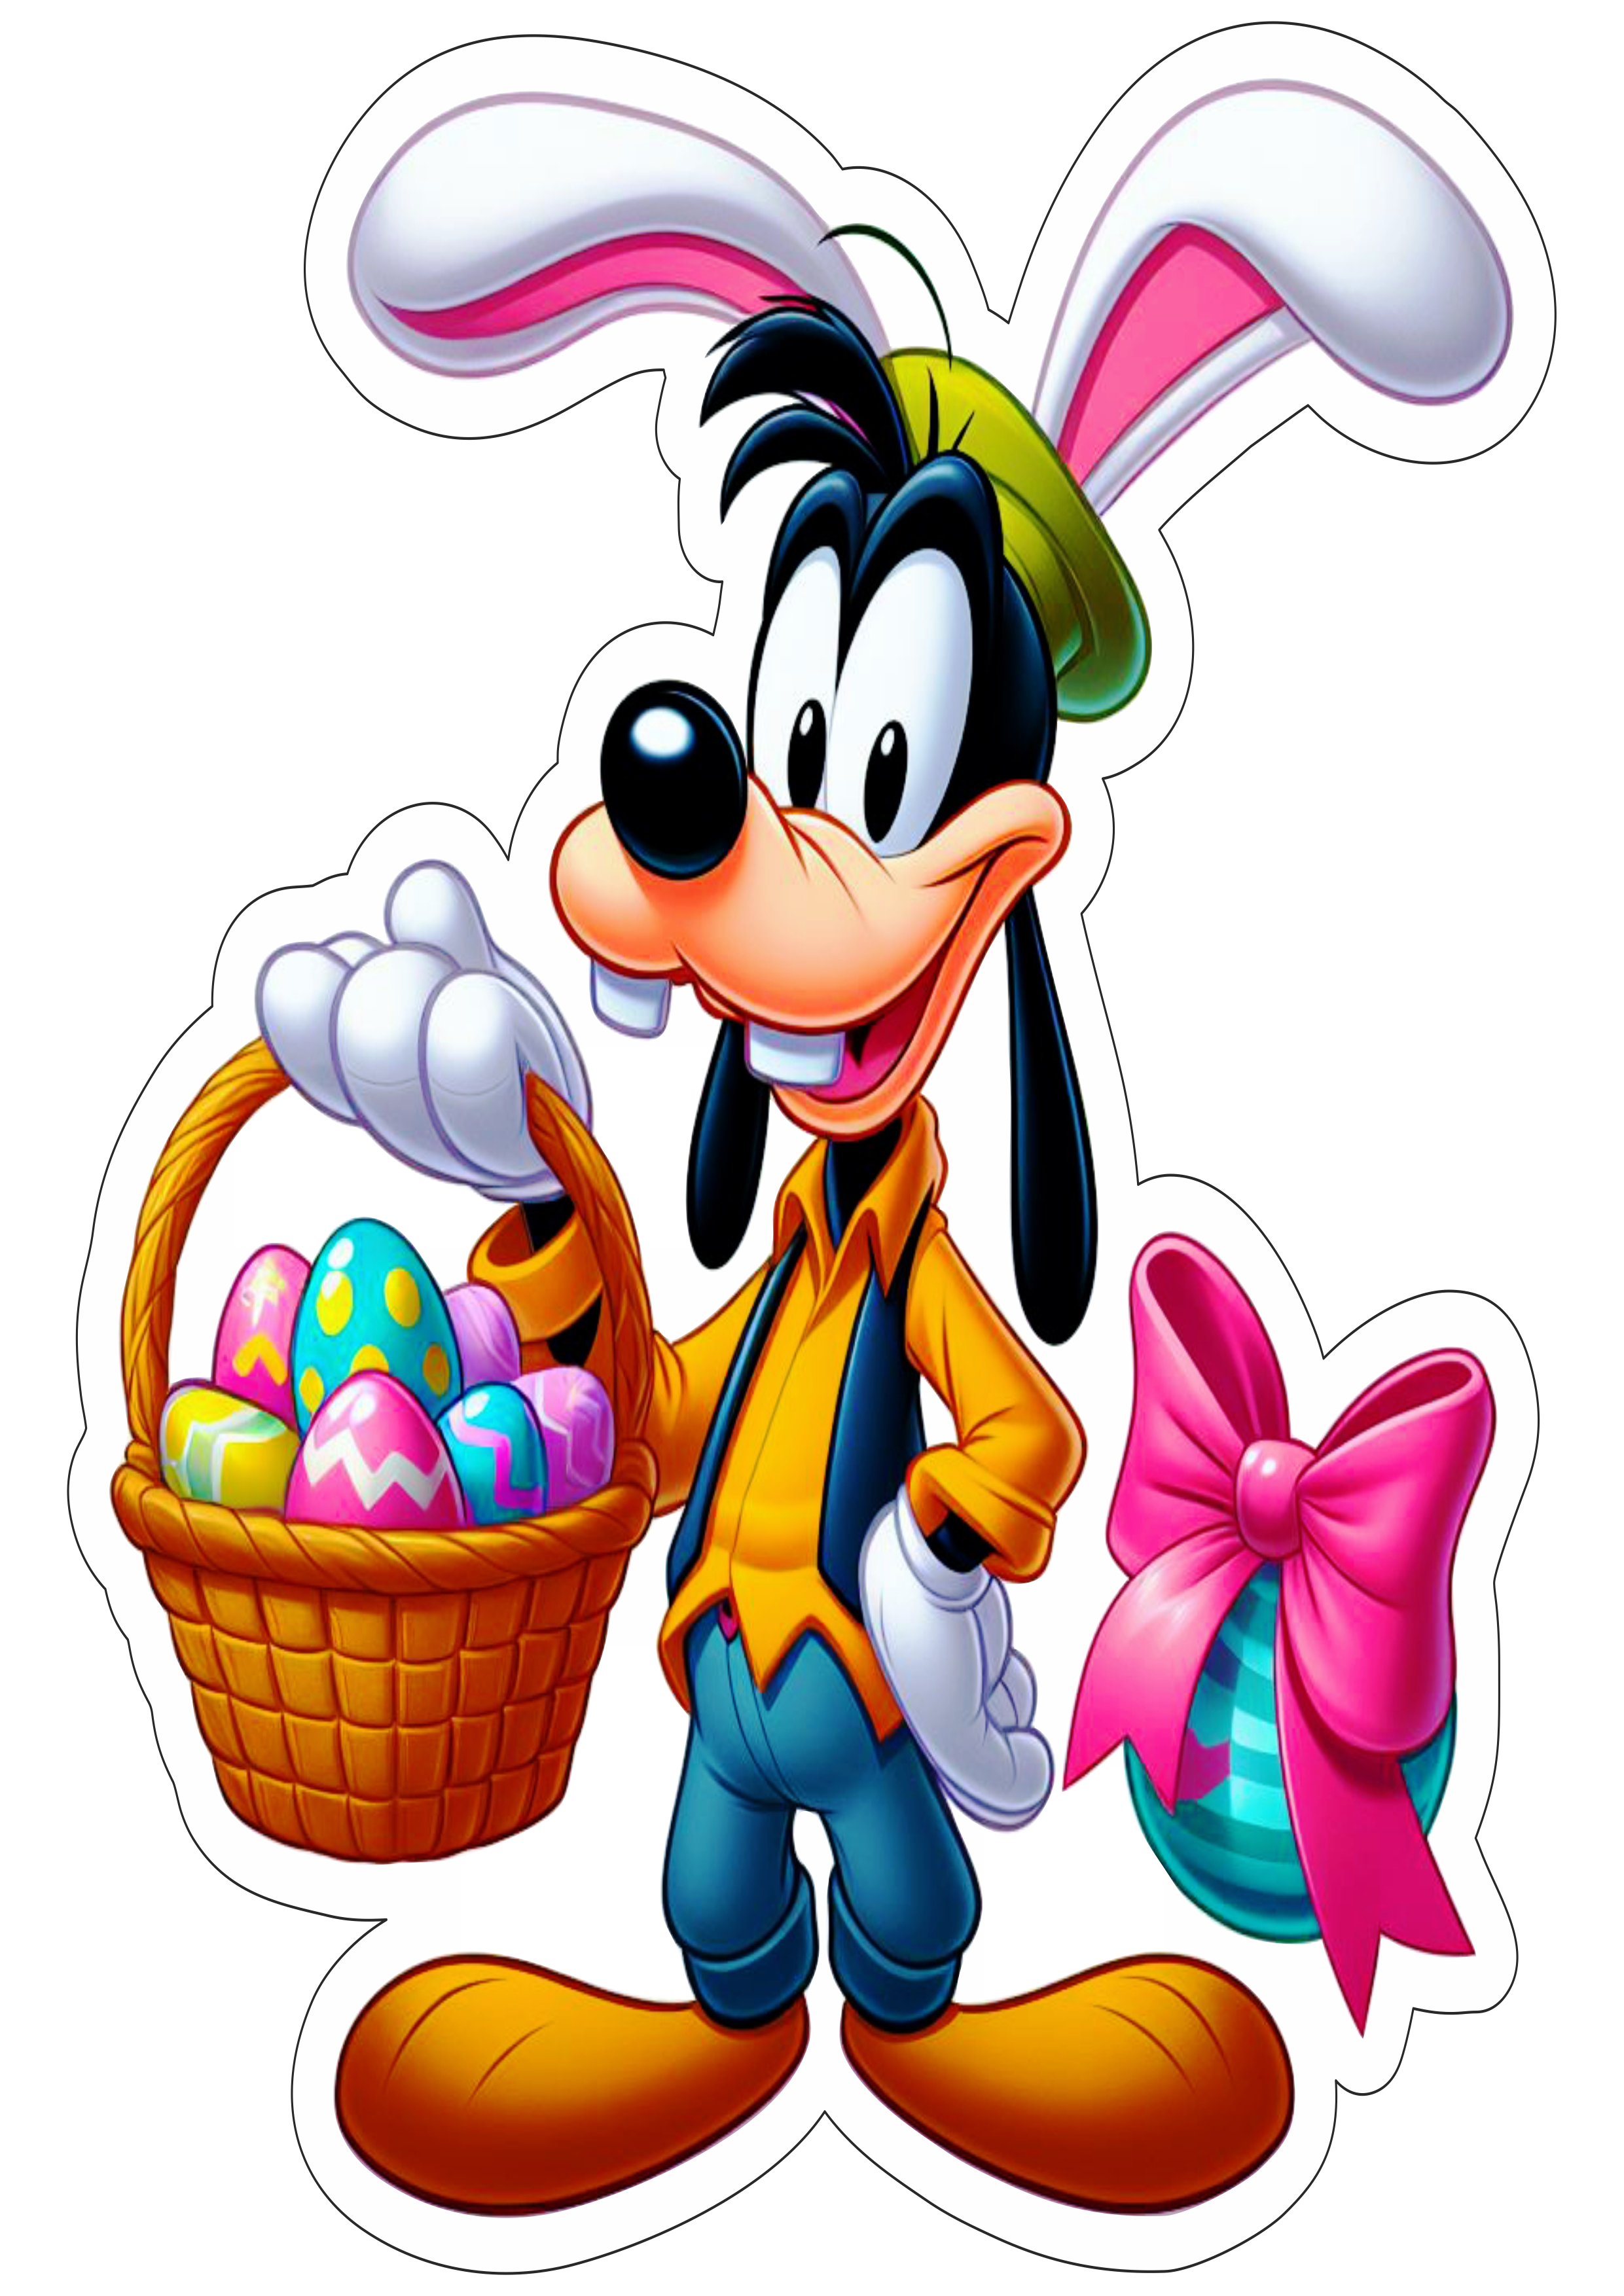 Turma do Mickey Mouse Pateta ovos de páscoa desenho infantil colorido ilustração png